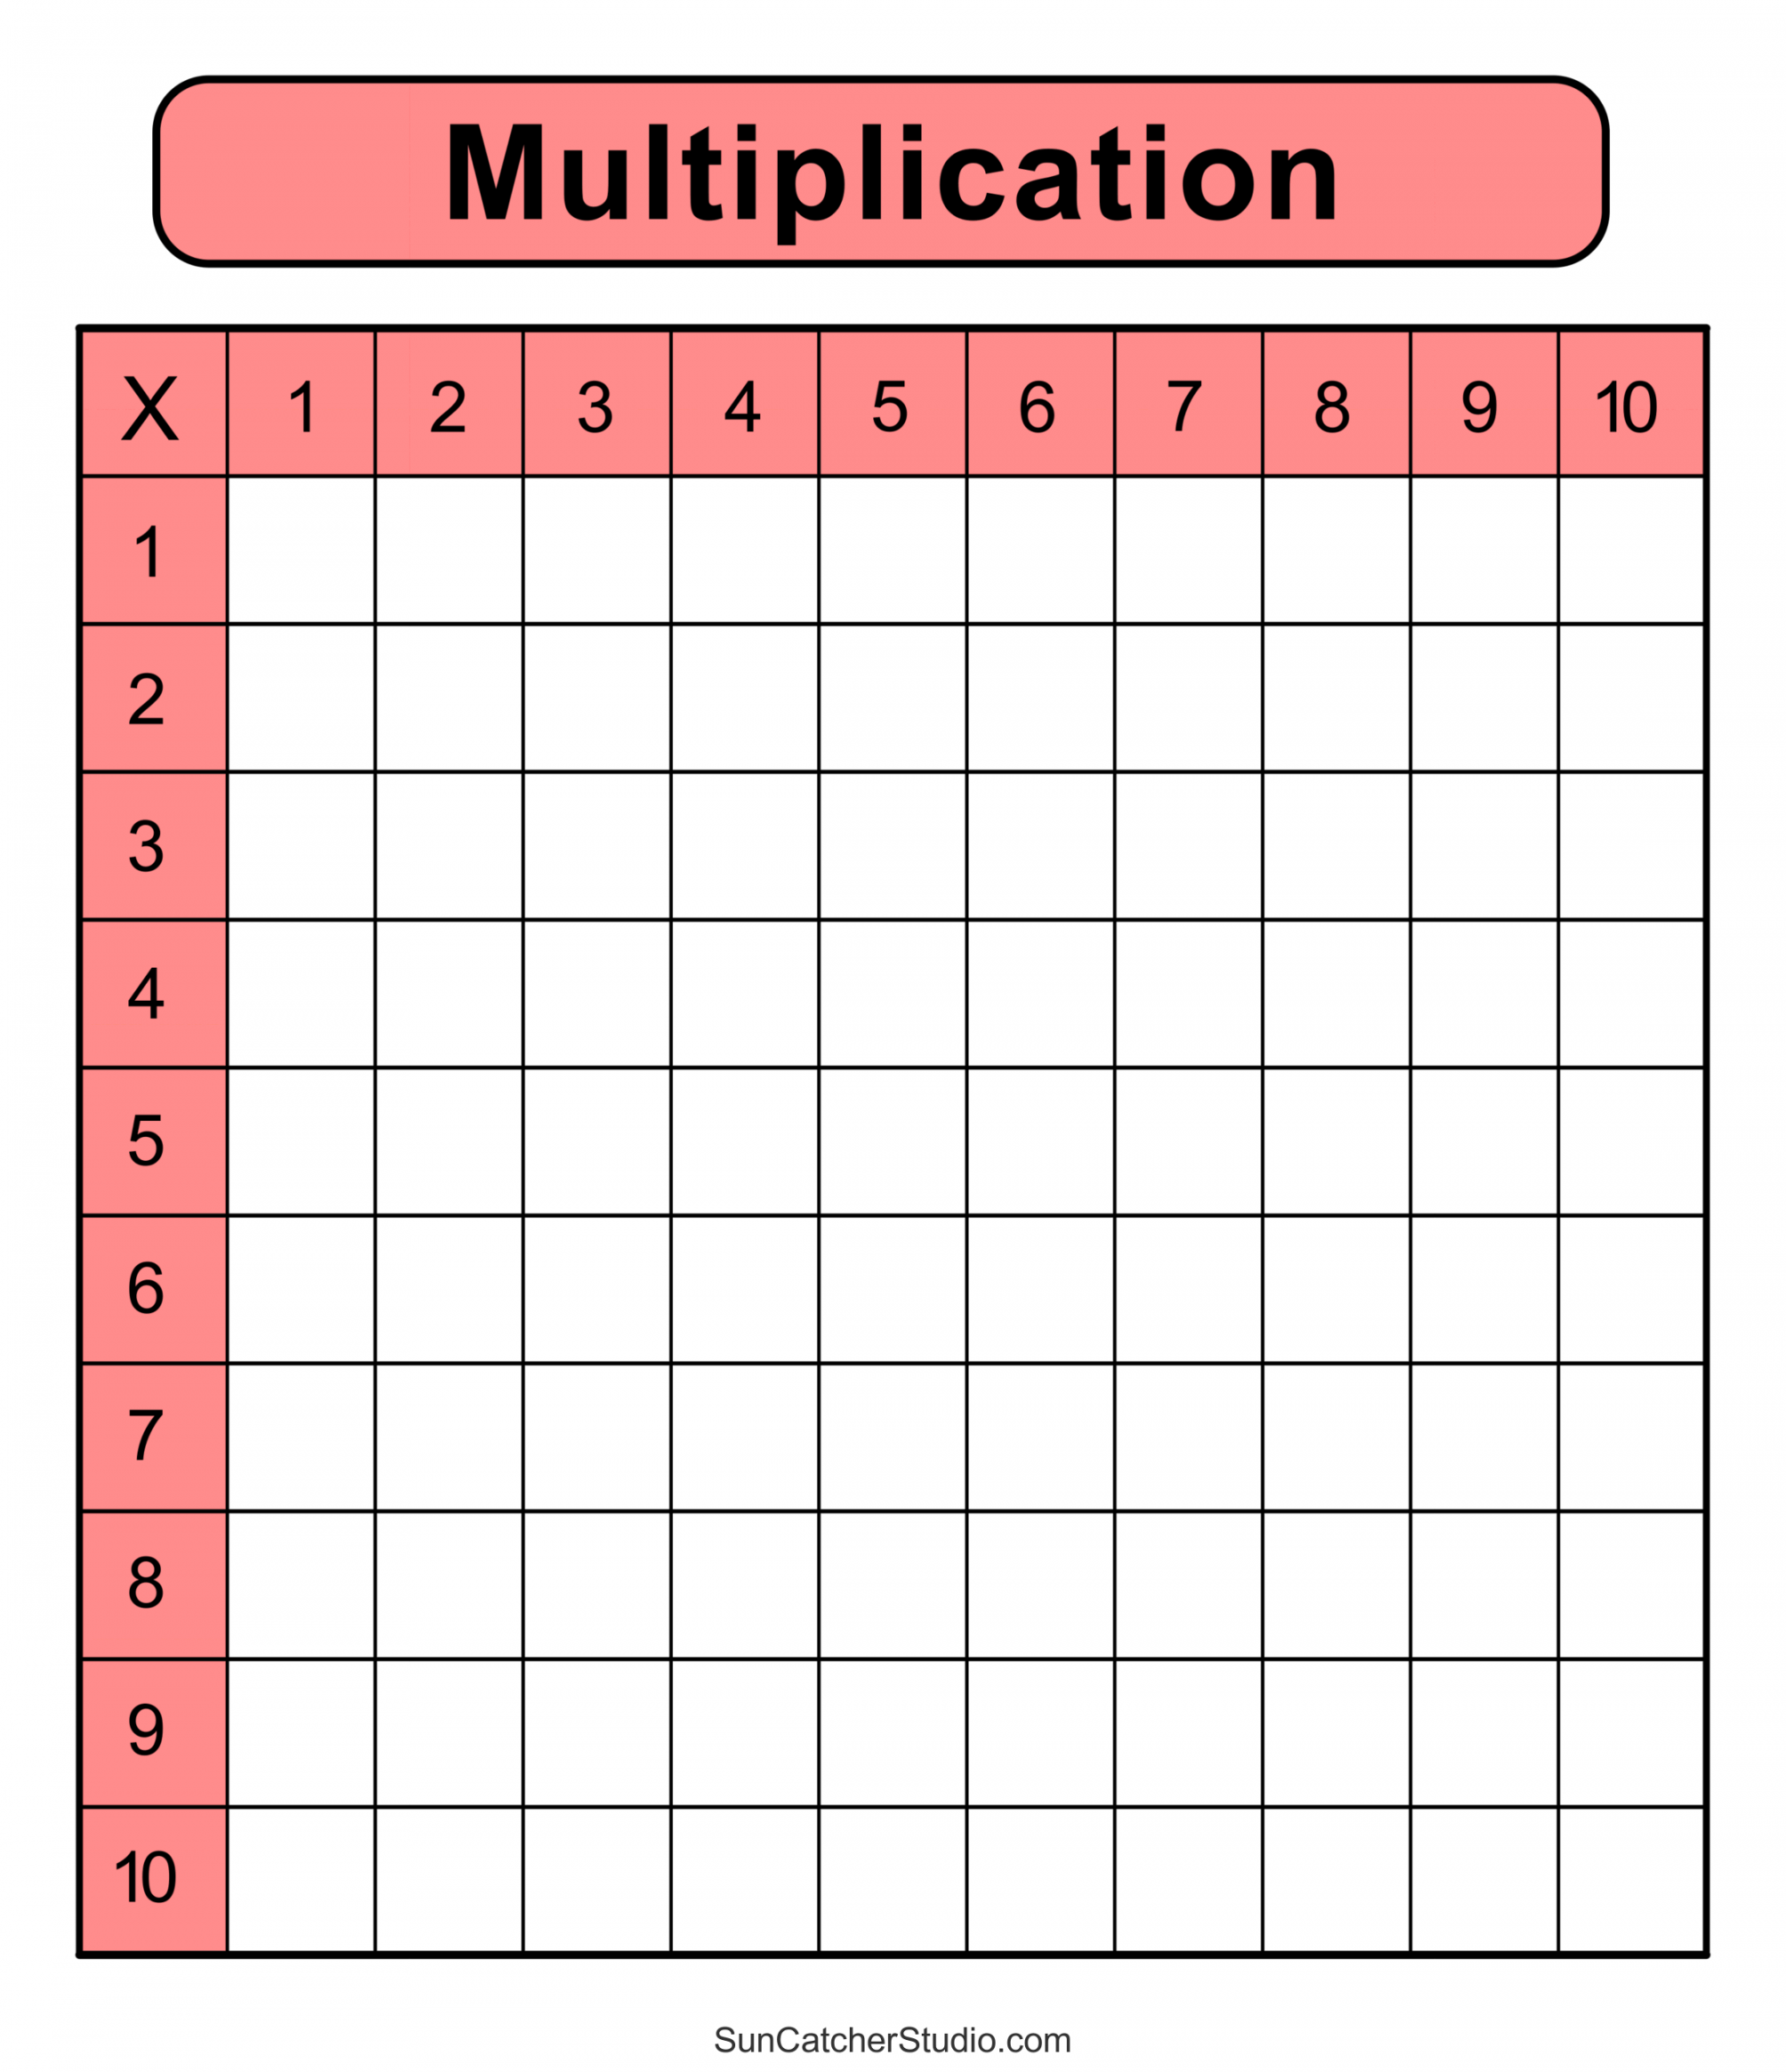 Multiplication Charts (PDF): Free Printable Times Tables – DIY  - FREE Printables - Blank Multiplication Table Printable